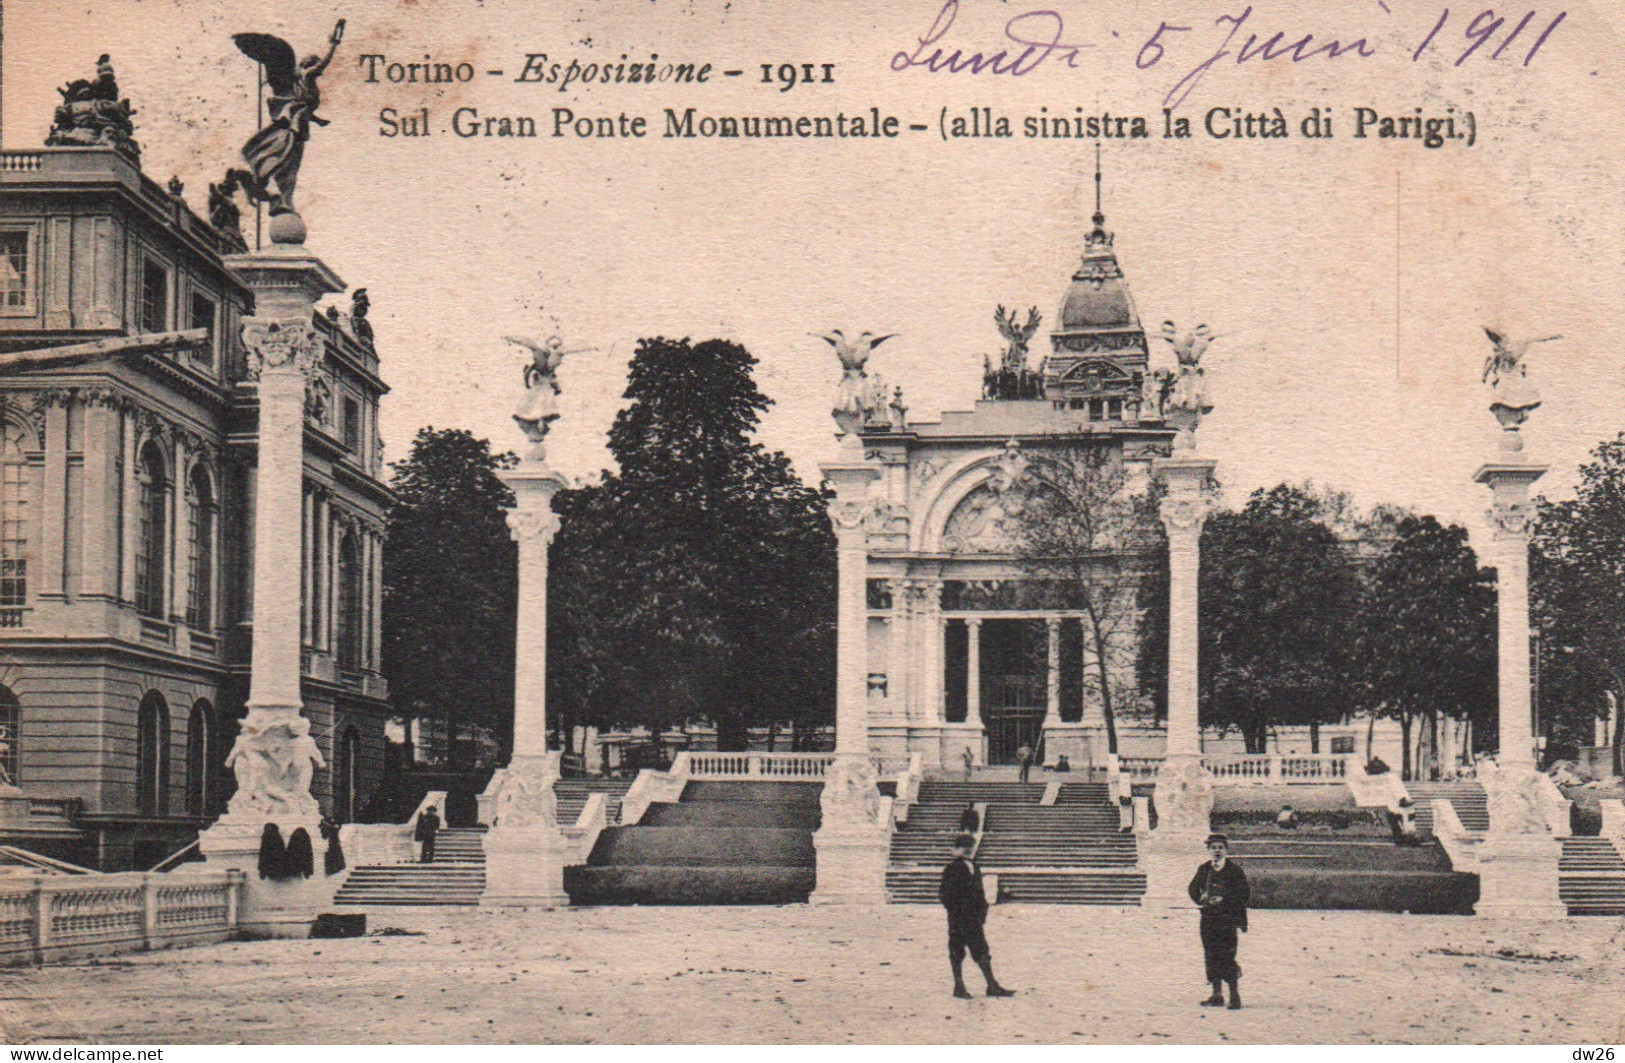 Torino (Turin) Esposizione 1911 - Sul Gran Ponte Monumentale (le Pont, Alla Sinistra La Città Di Parigi) - Ausstellungen